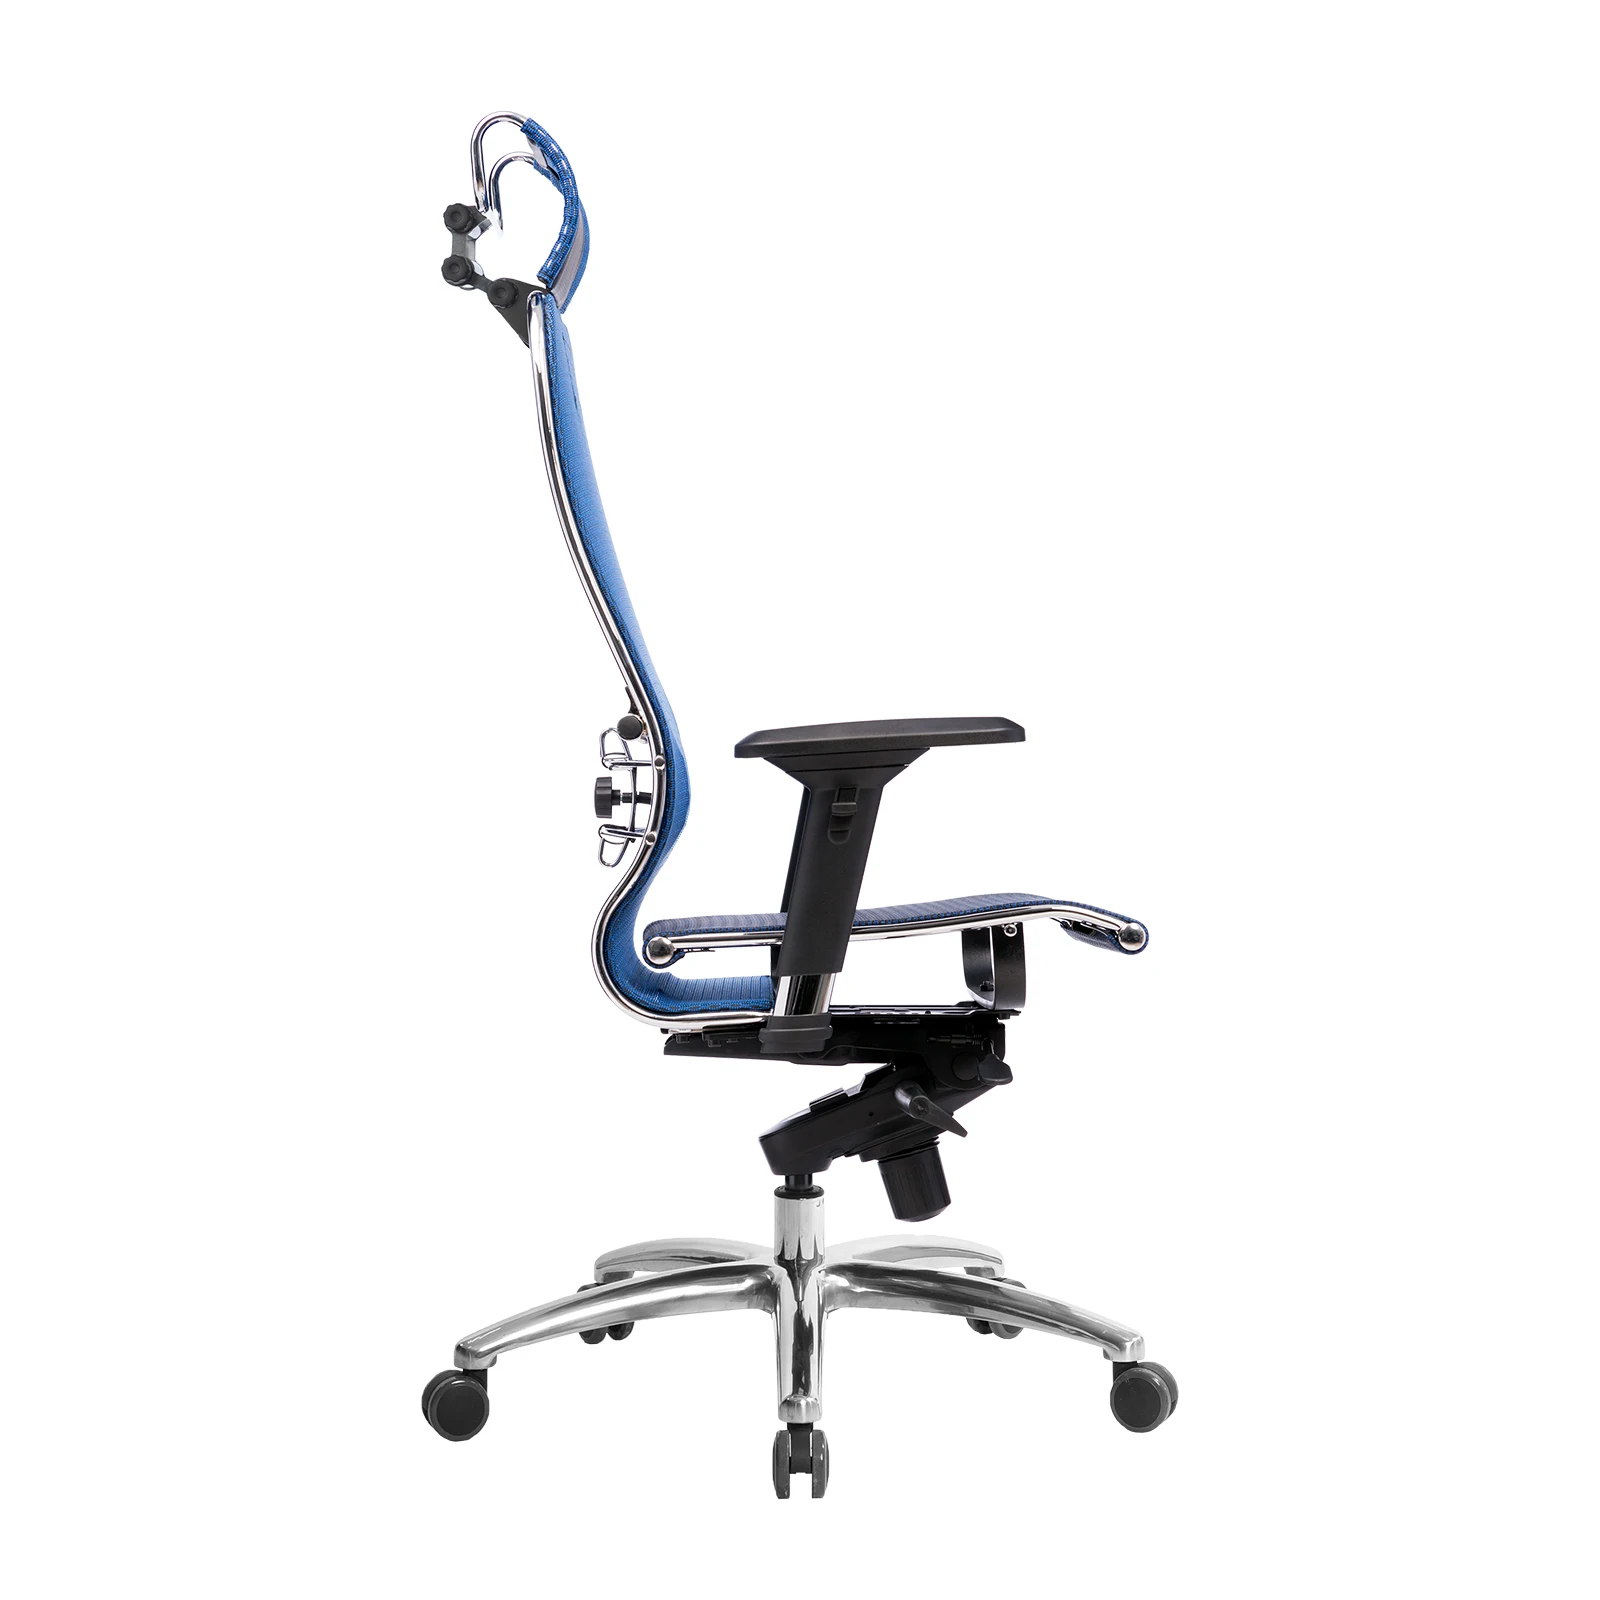 Кресло Метта SAMURAI S-3.04 Синий- офисное удобное кресло для компьютера. Находка